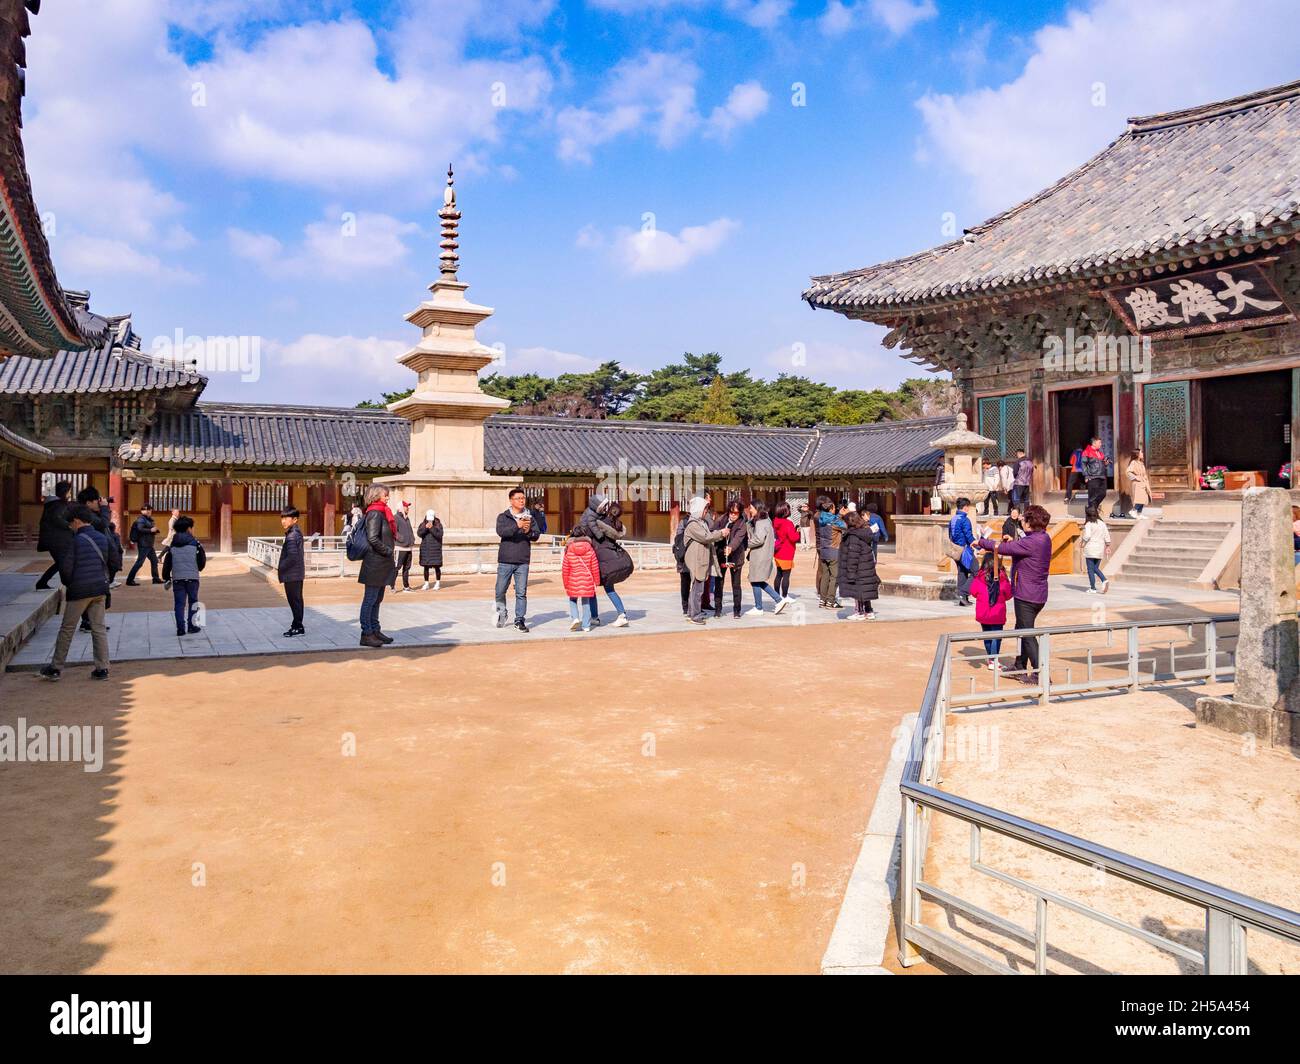 31 Marzo 2019: Gyeong-Ju, Corea del Sud - visitatori presso il Bulguksa Tempio Buddista, Gyeong-Ju, un sito Patrimonio Mondiale dell'UNESCO. Foto Stock